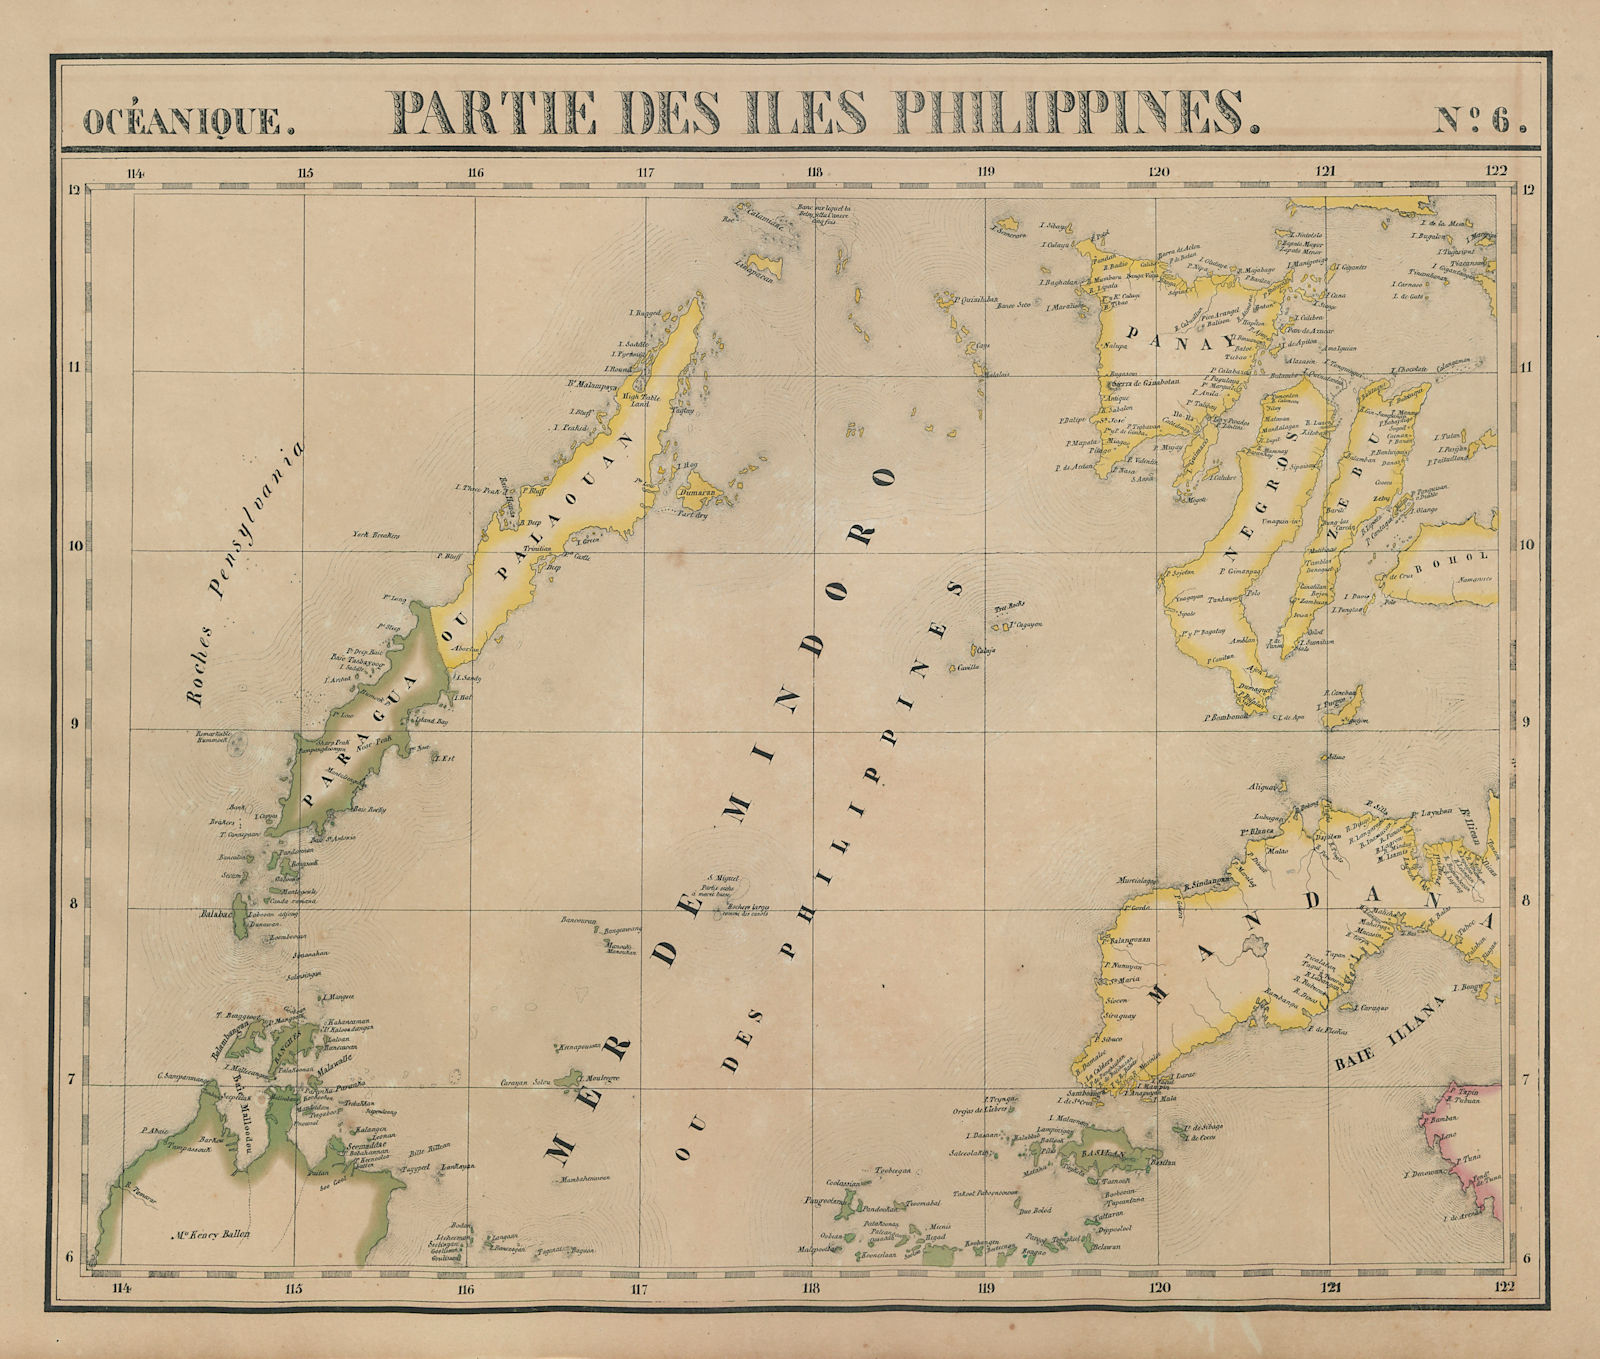 Océanique. Partie des Iles Philippines #6 Visayas Mindanao VANDERMAELEN 1827 map